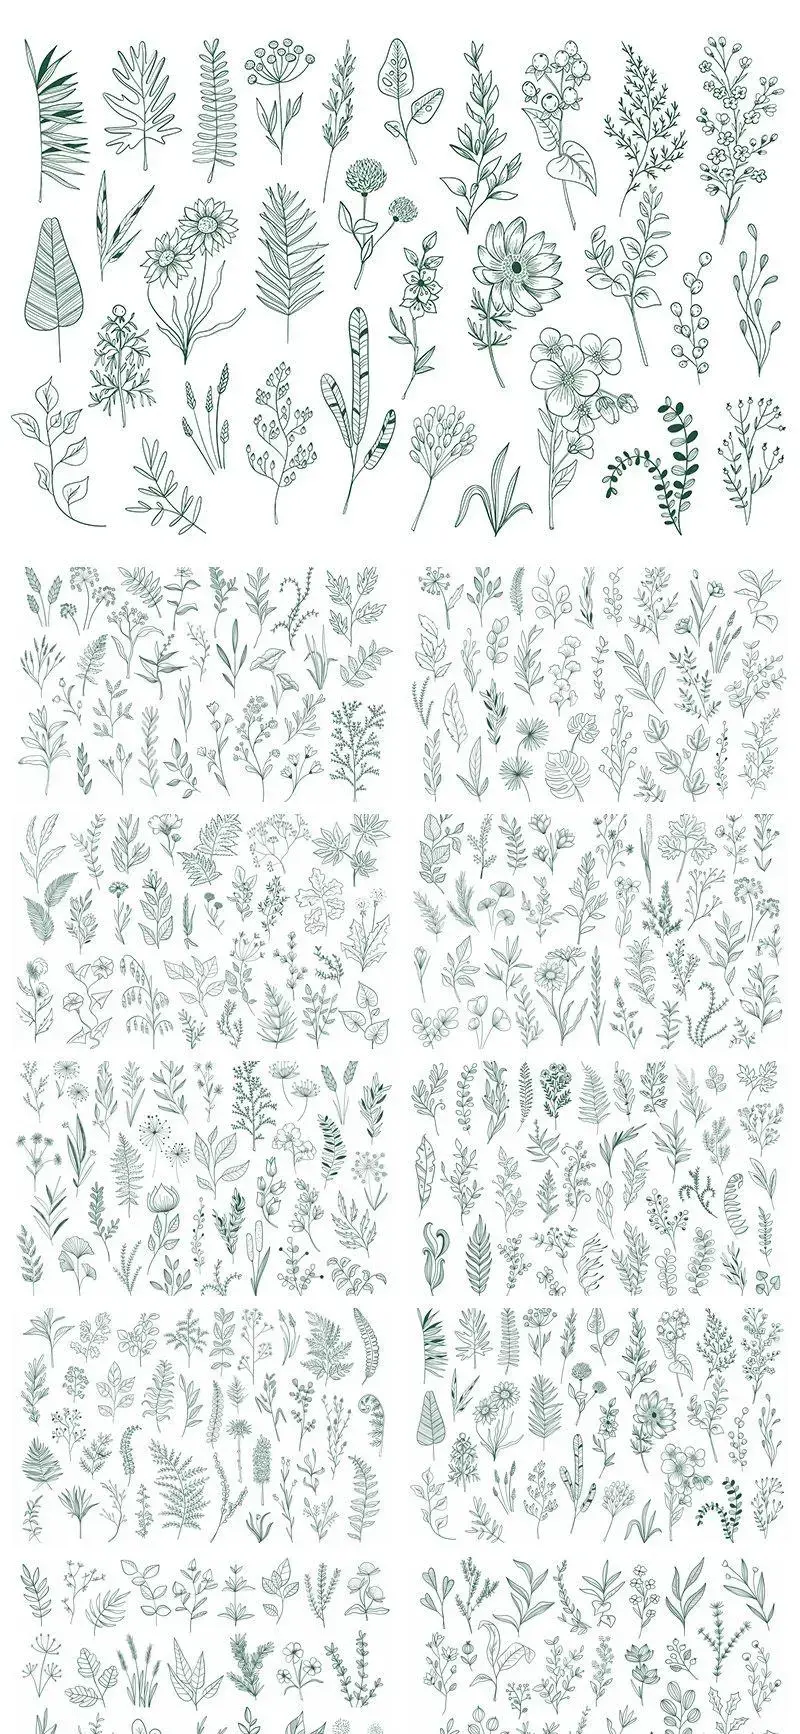 318款简约手绘线条植物树叶AI+PNG格式-爱设计爱分享c